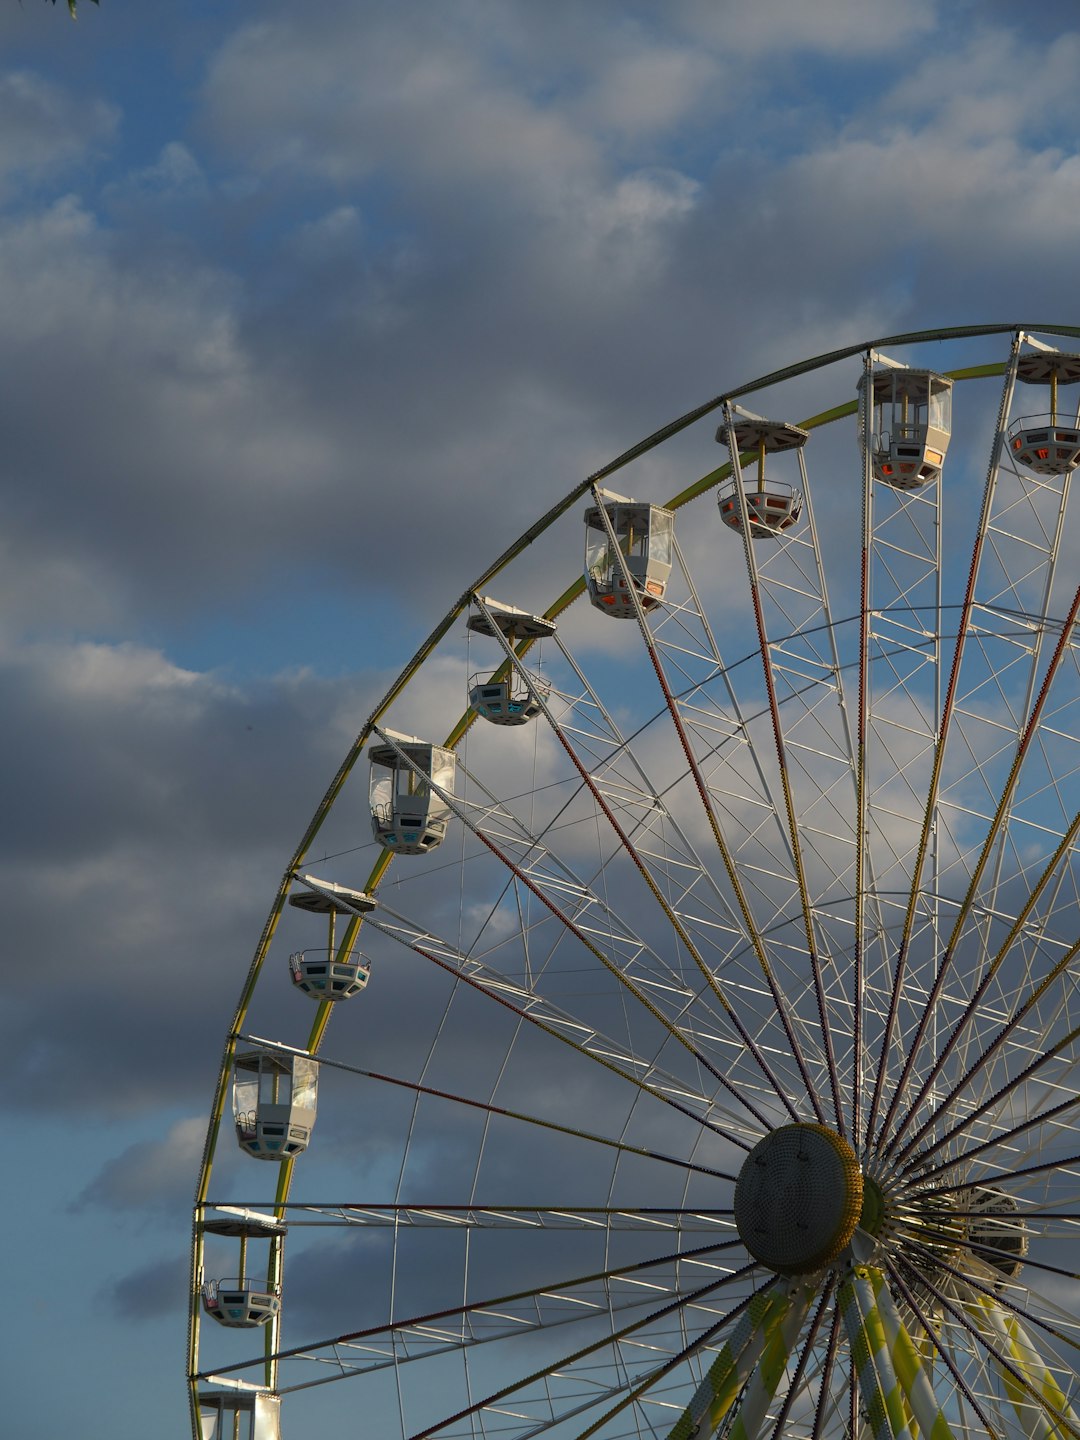 Ferris wheel photo spot Vincennes France